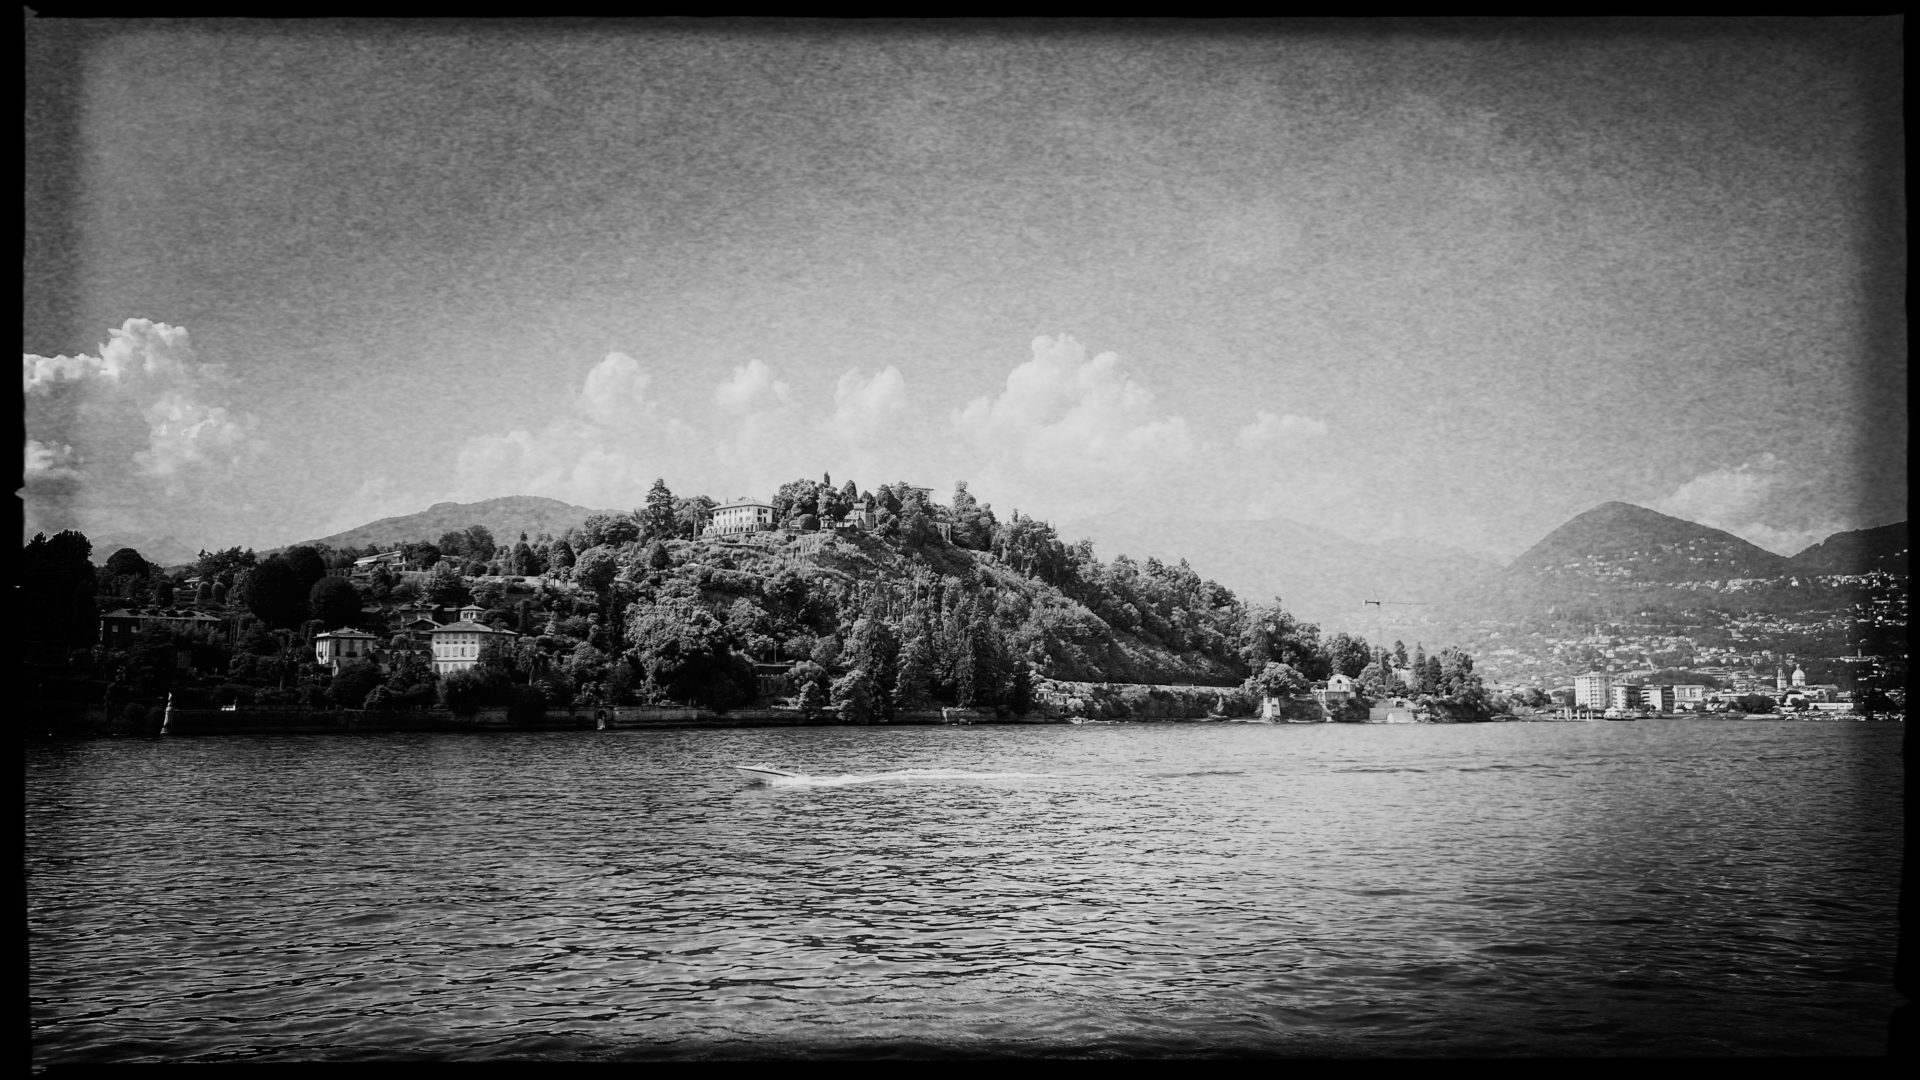 Motorboot auf dem Lago Maggiore mit stattlichen Villen auf den Hügeln am Ufer